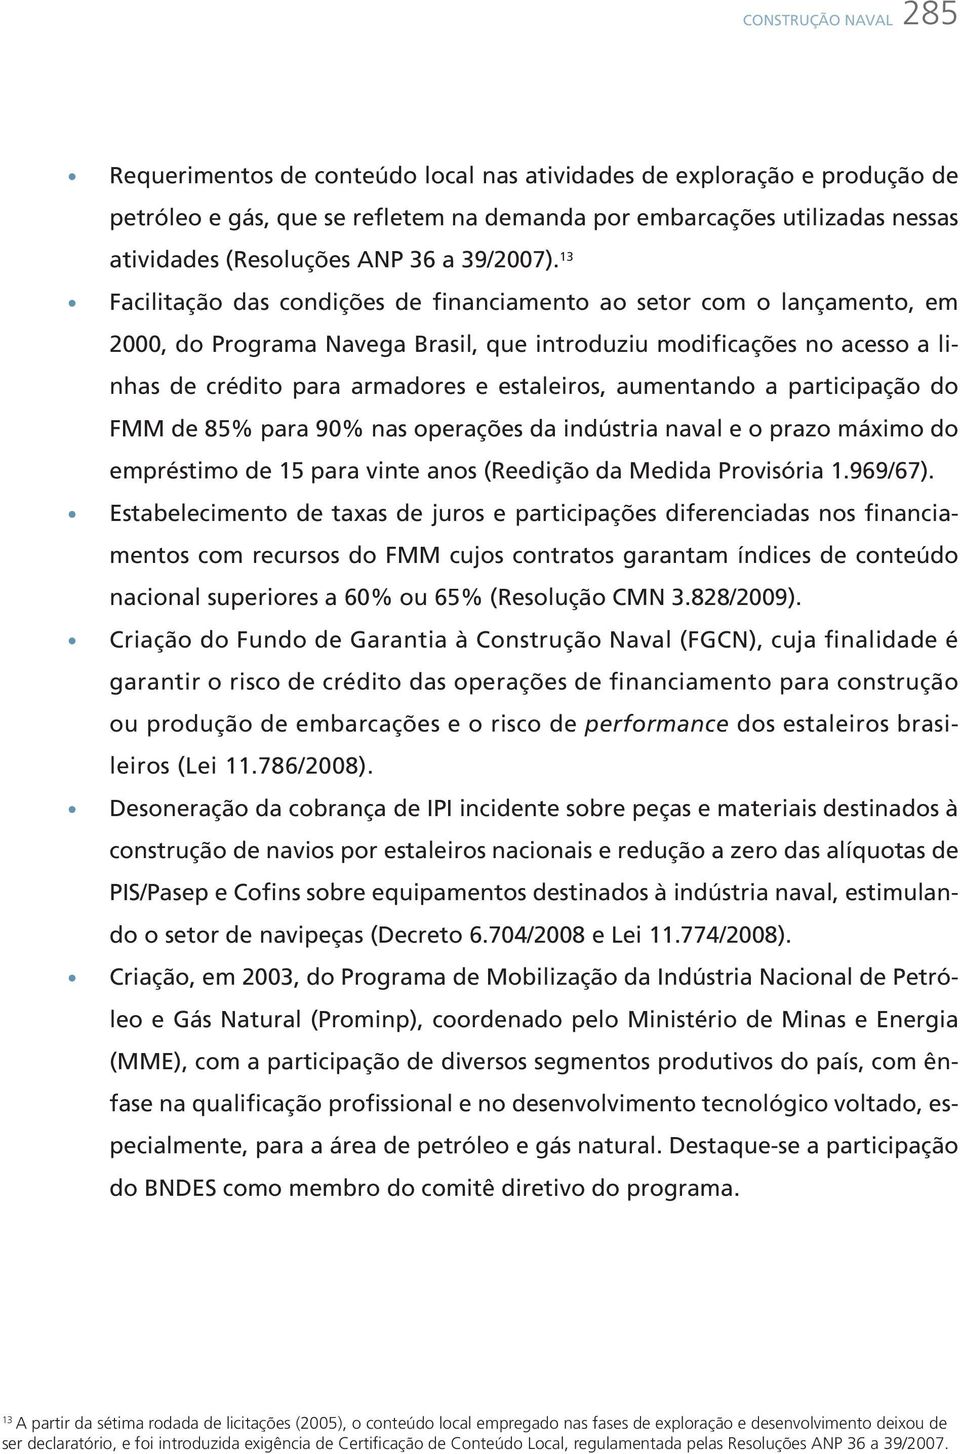 13 Facilitação das condições de financiamento ao setor com o lançamento, em 2000, do Programa Navega Brasil, que introduziu modificações no acesso a linhas de crédito para armadores e estaleiros,